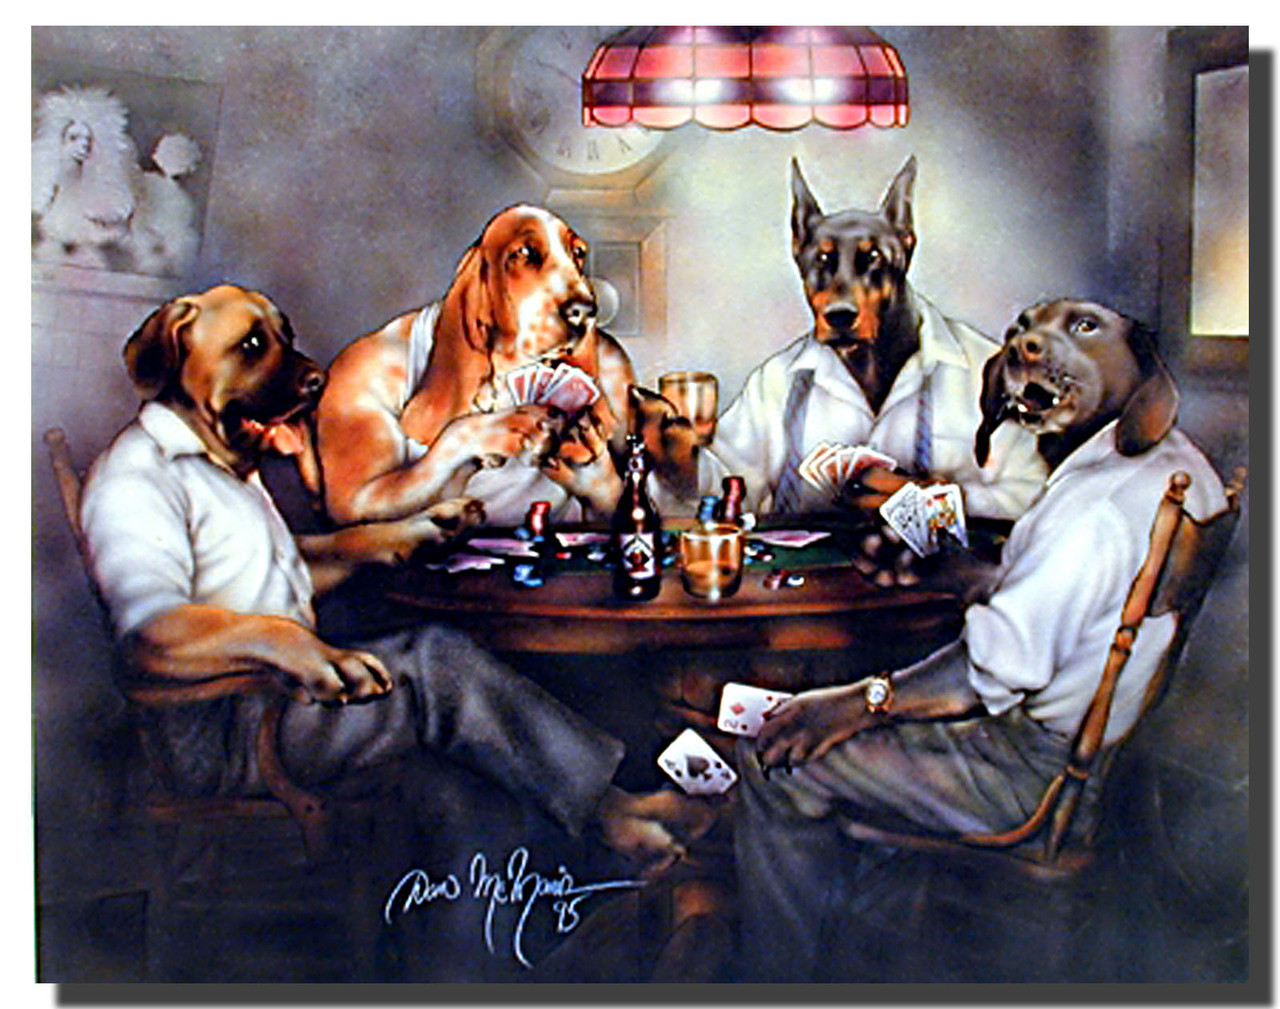 Кассиус Кулидж собаки играющие в Покер. Кассиус Кулидж собаки играющие в Покер оригинал. Собаки Покер Кулидж. Собаки играют в Покер картина.